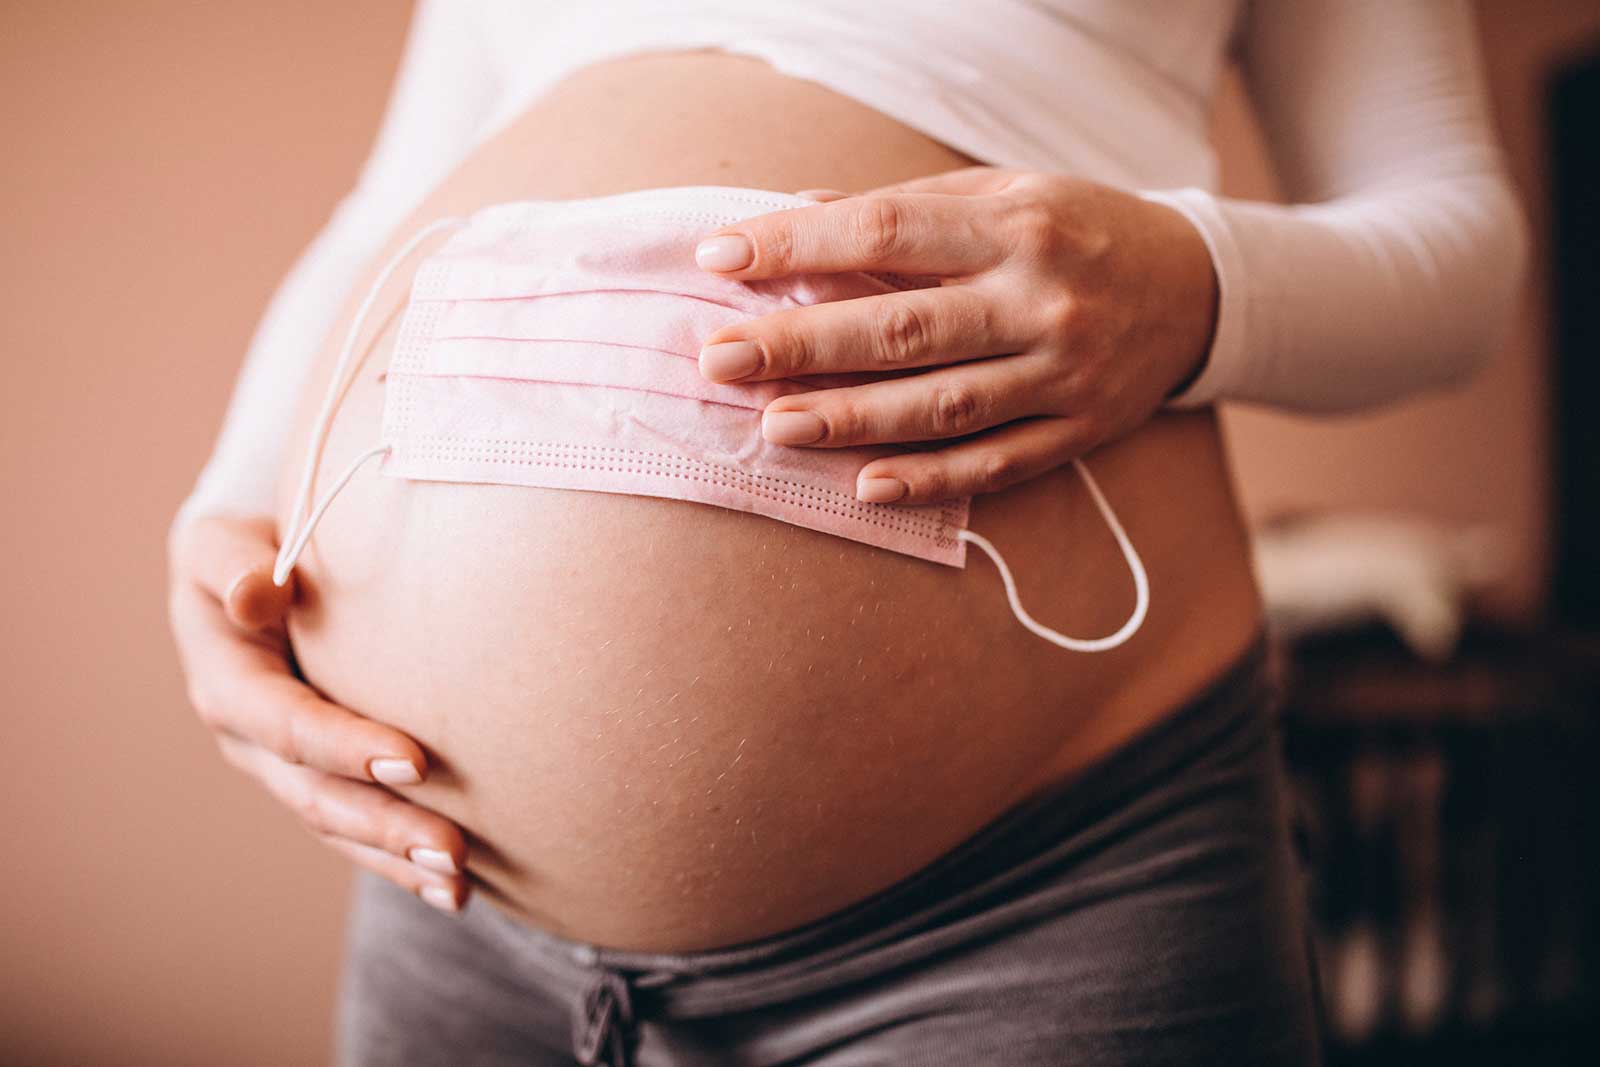 Apakah Tanda-Tanda Cryptic Pregnancy Bisa Dikenali?